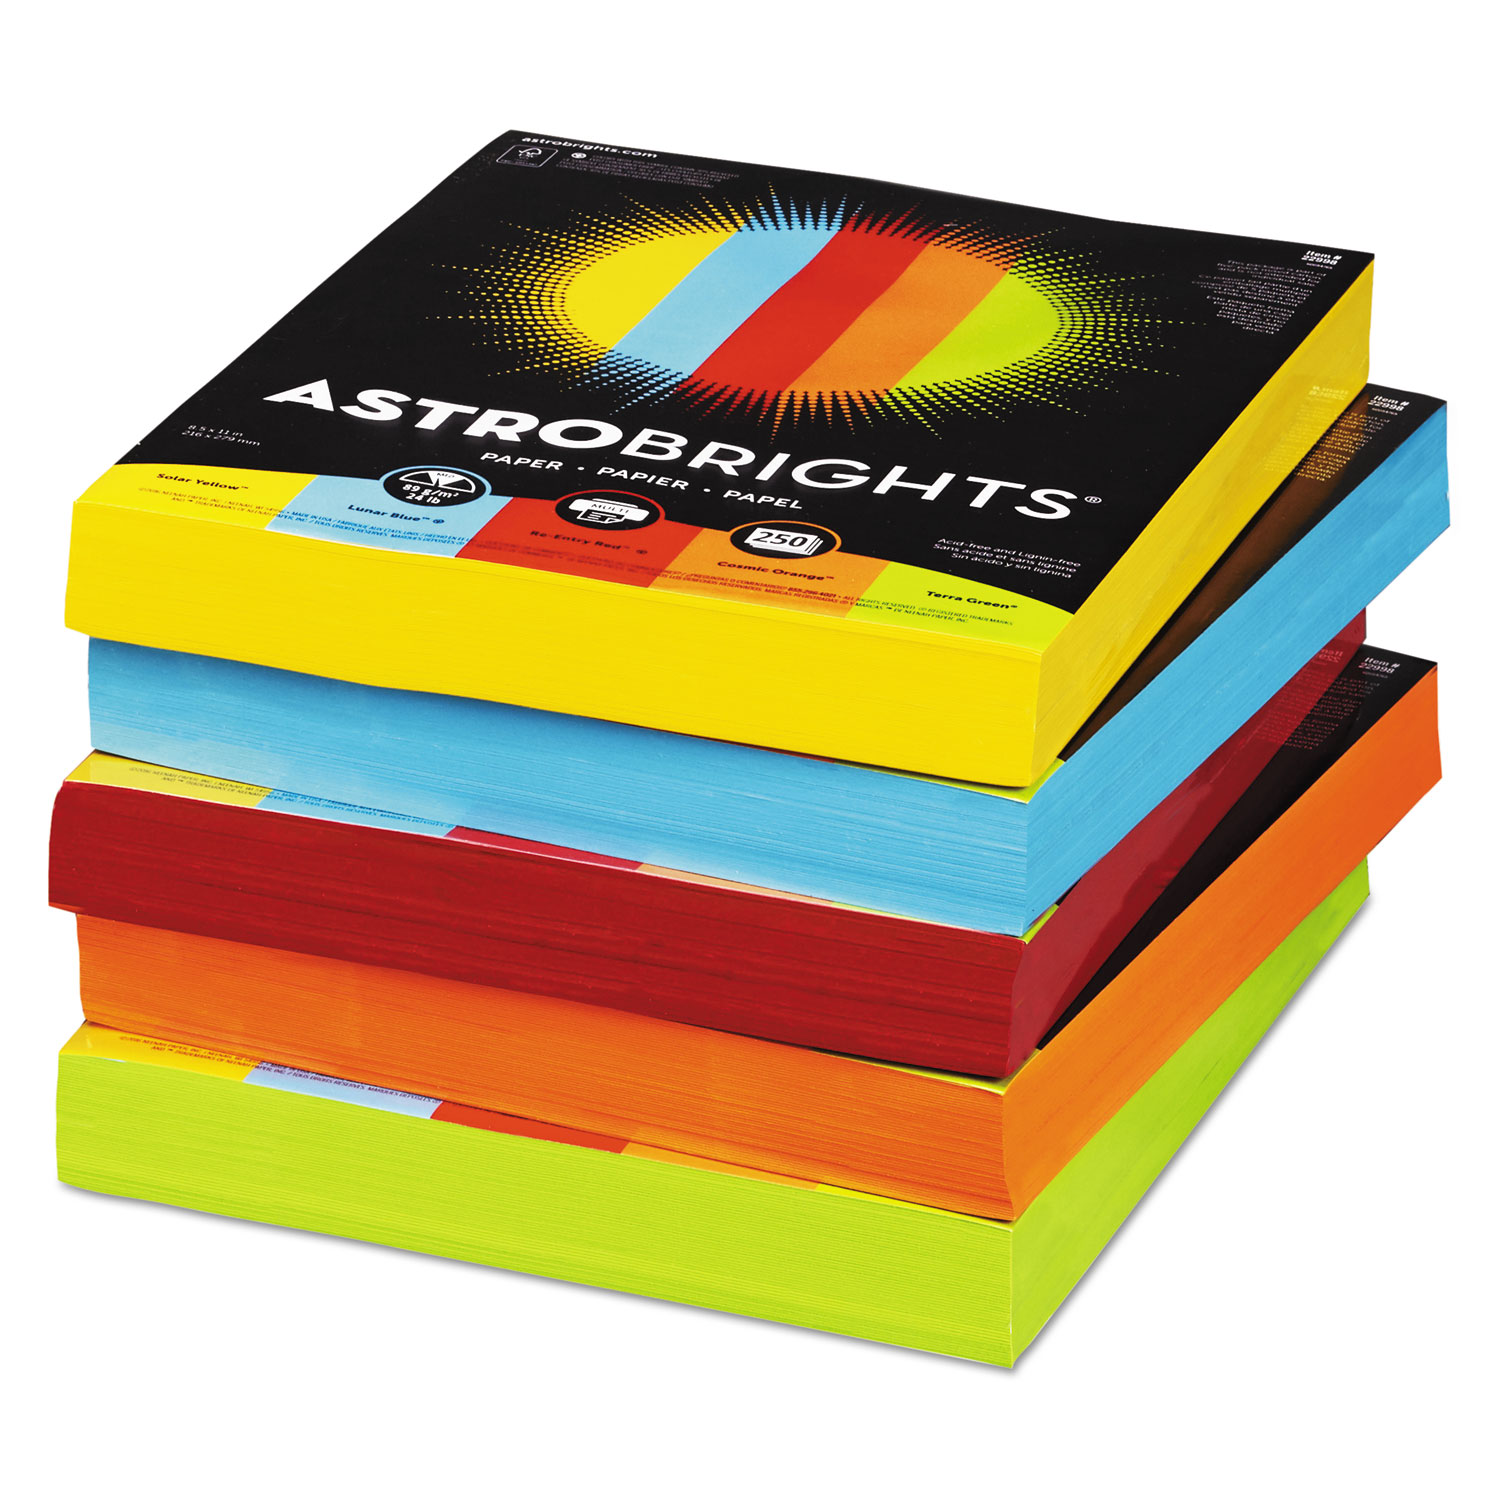 Color Paper - Five-Color Mixed Reams, 24lb, 8 1/2 x 11, 5 Colors, 1250 Sheets